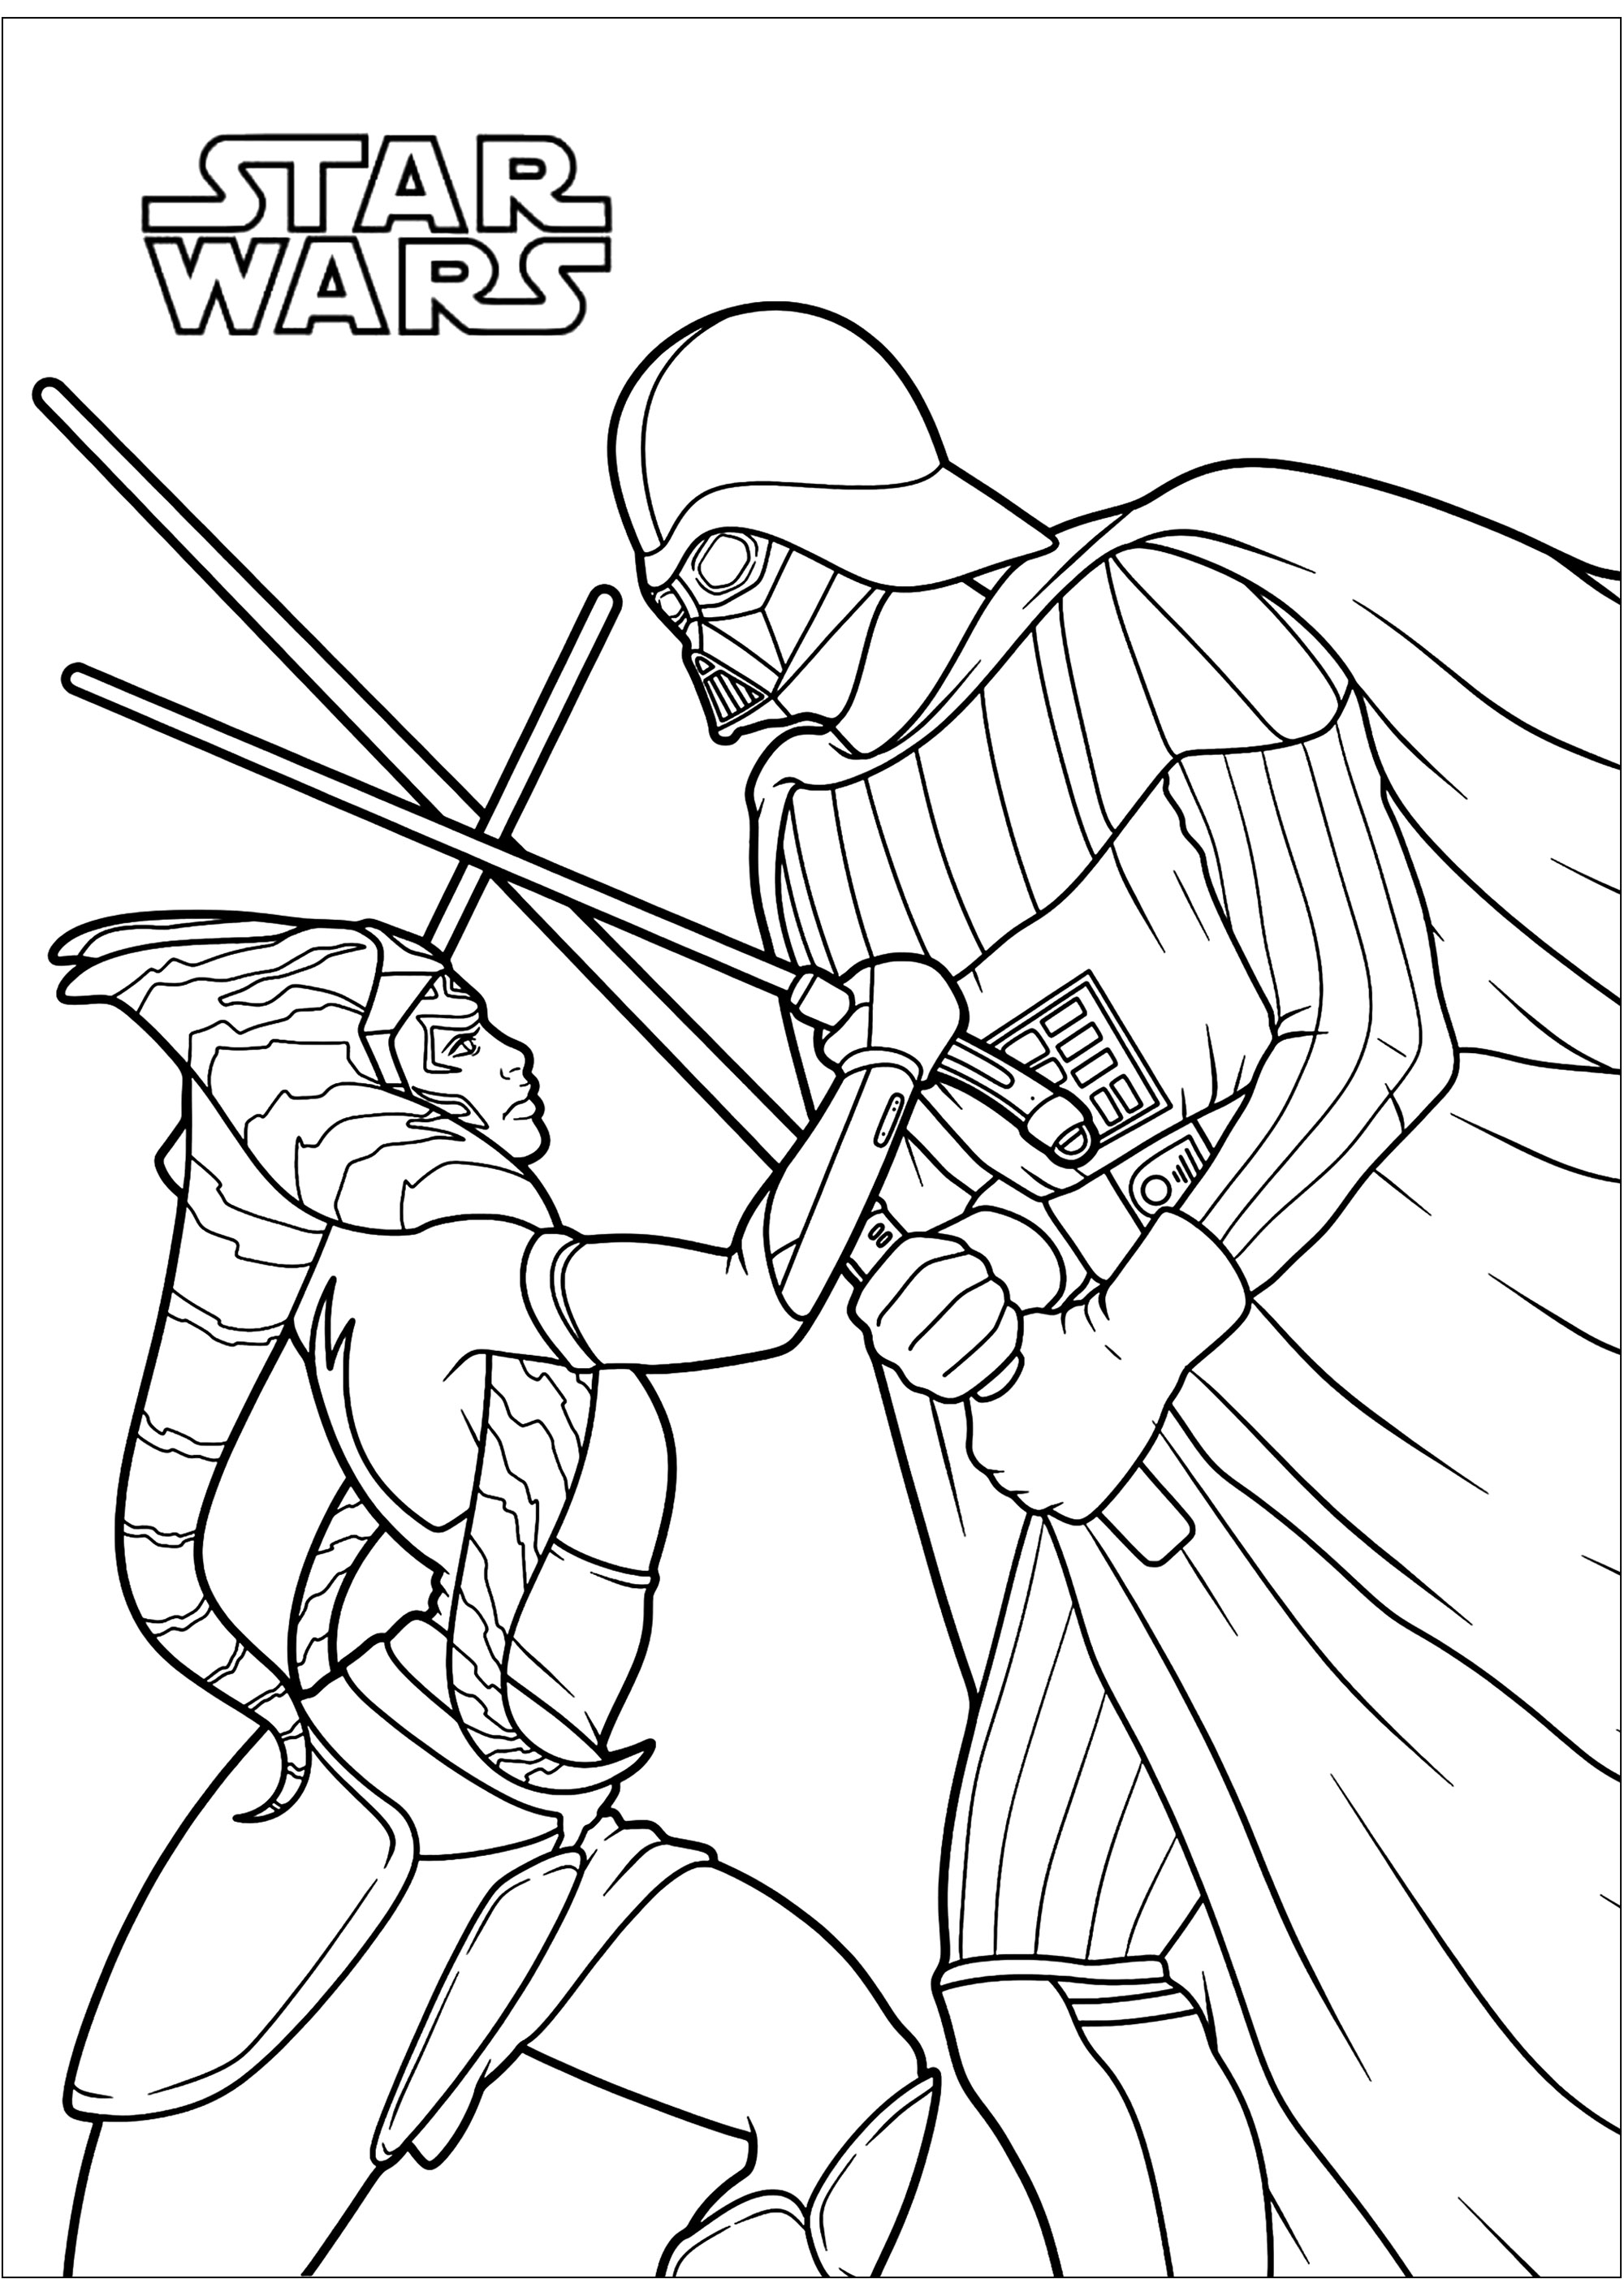 Ahsoka Tano lucha contra Darth Vader, que no es otro que su antiguo maestro Jedi Anakin Skywalker. Originaria del planeta Shili, Ahsoka Tano fue llevada de niña a Coruscant para ser entrenada como Jedi. Al comienzo de las Guerras Clon, Ahsoka se convirtió en aprendiz de Anakin Skywalker y participó en numerosas batallas.